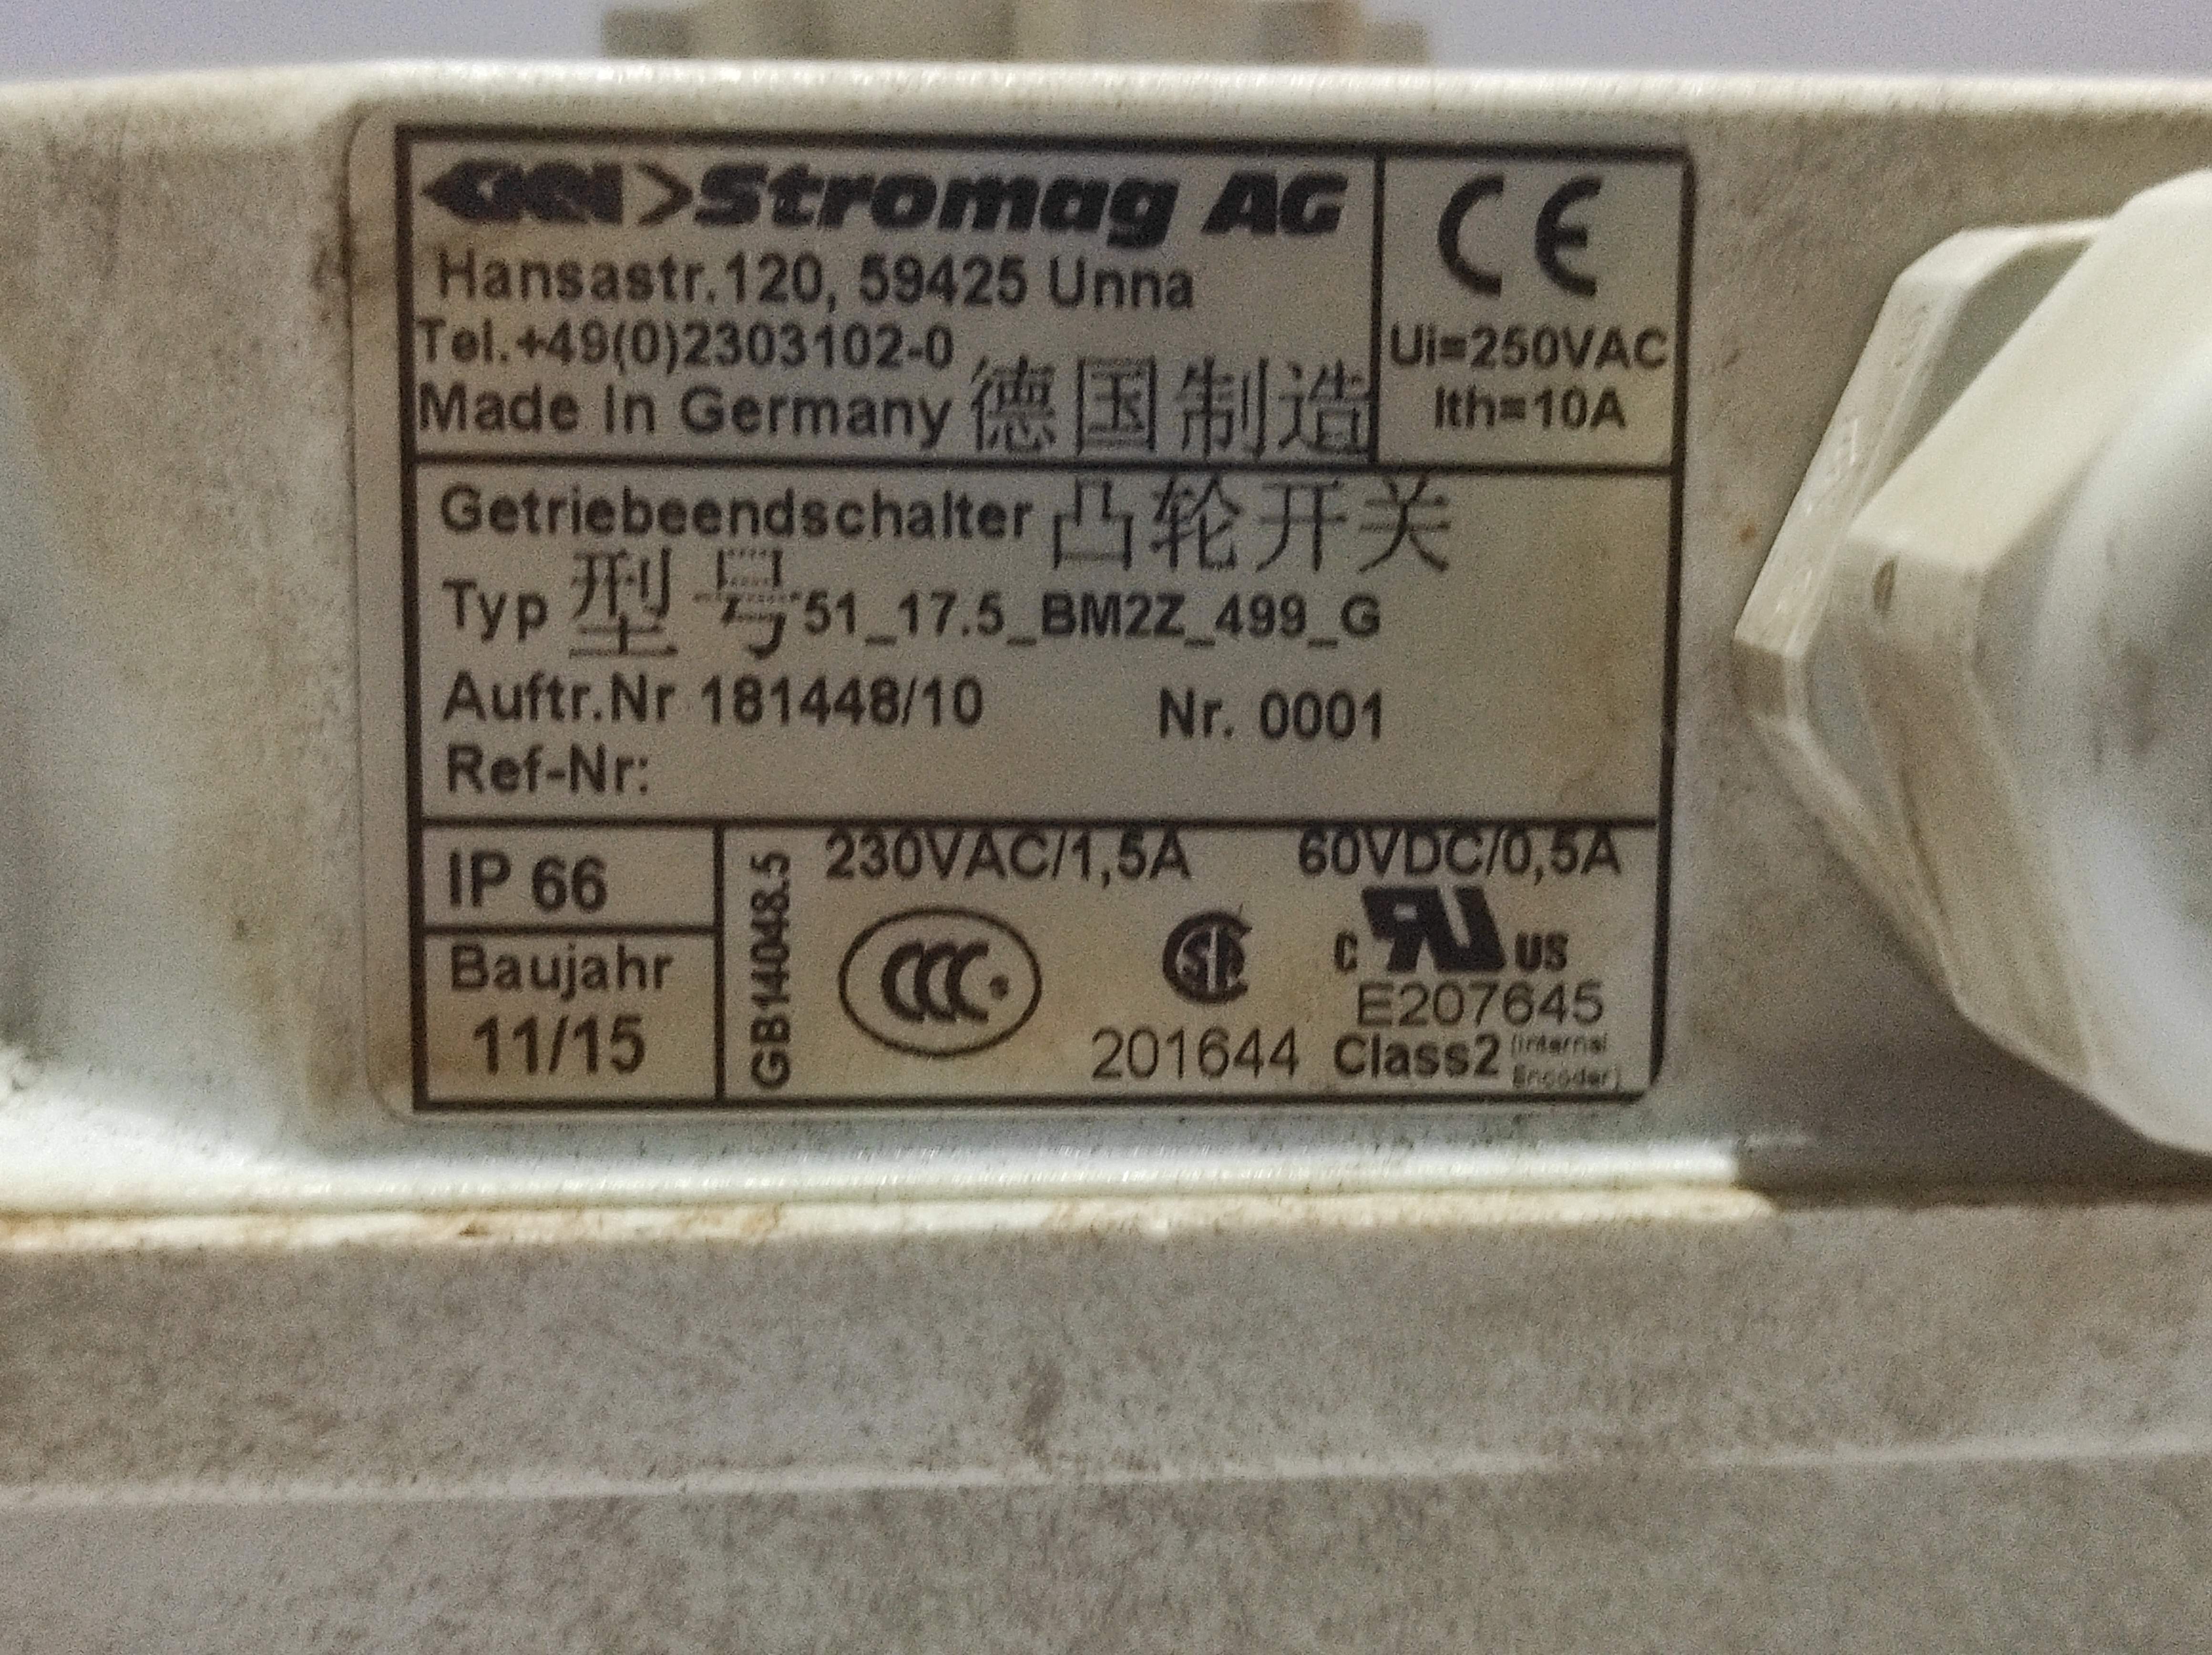 Stromag AG 51_17.5_BM2Z_499_G Gear Limit Switch